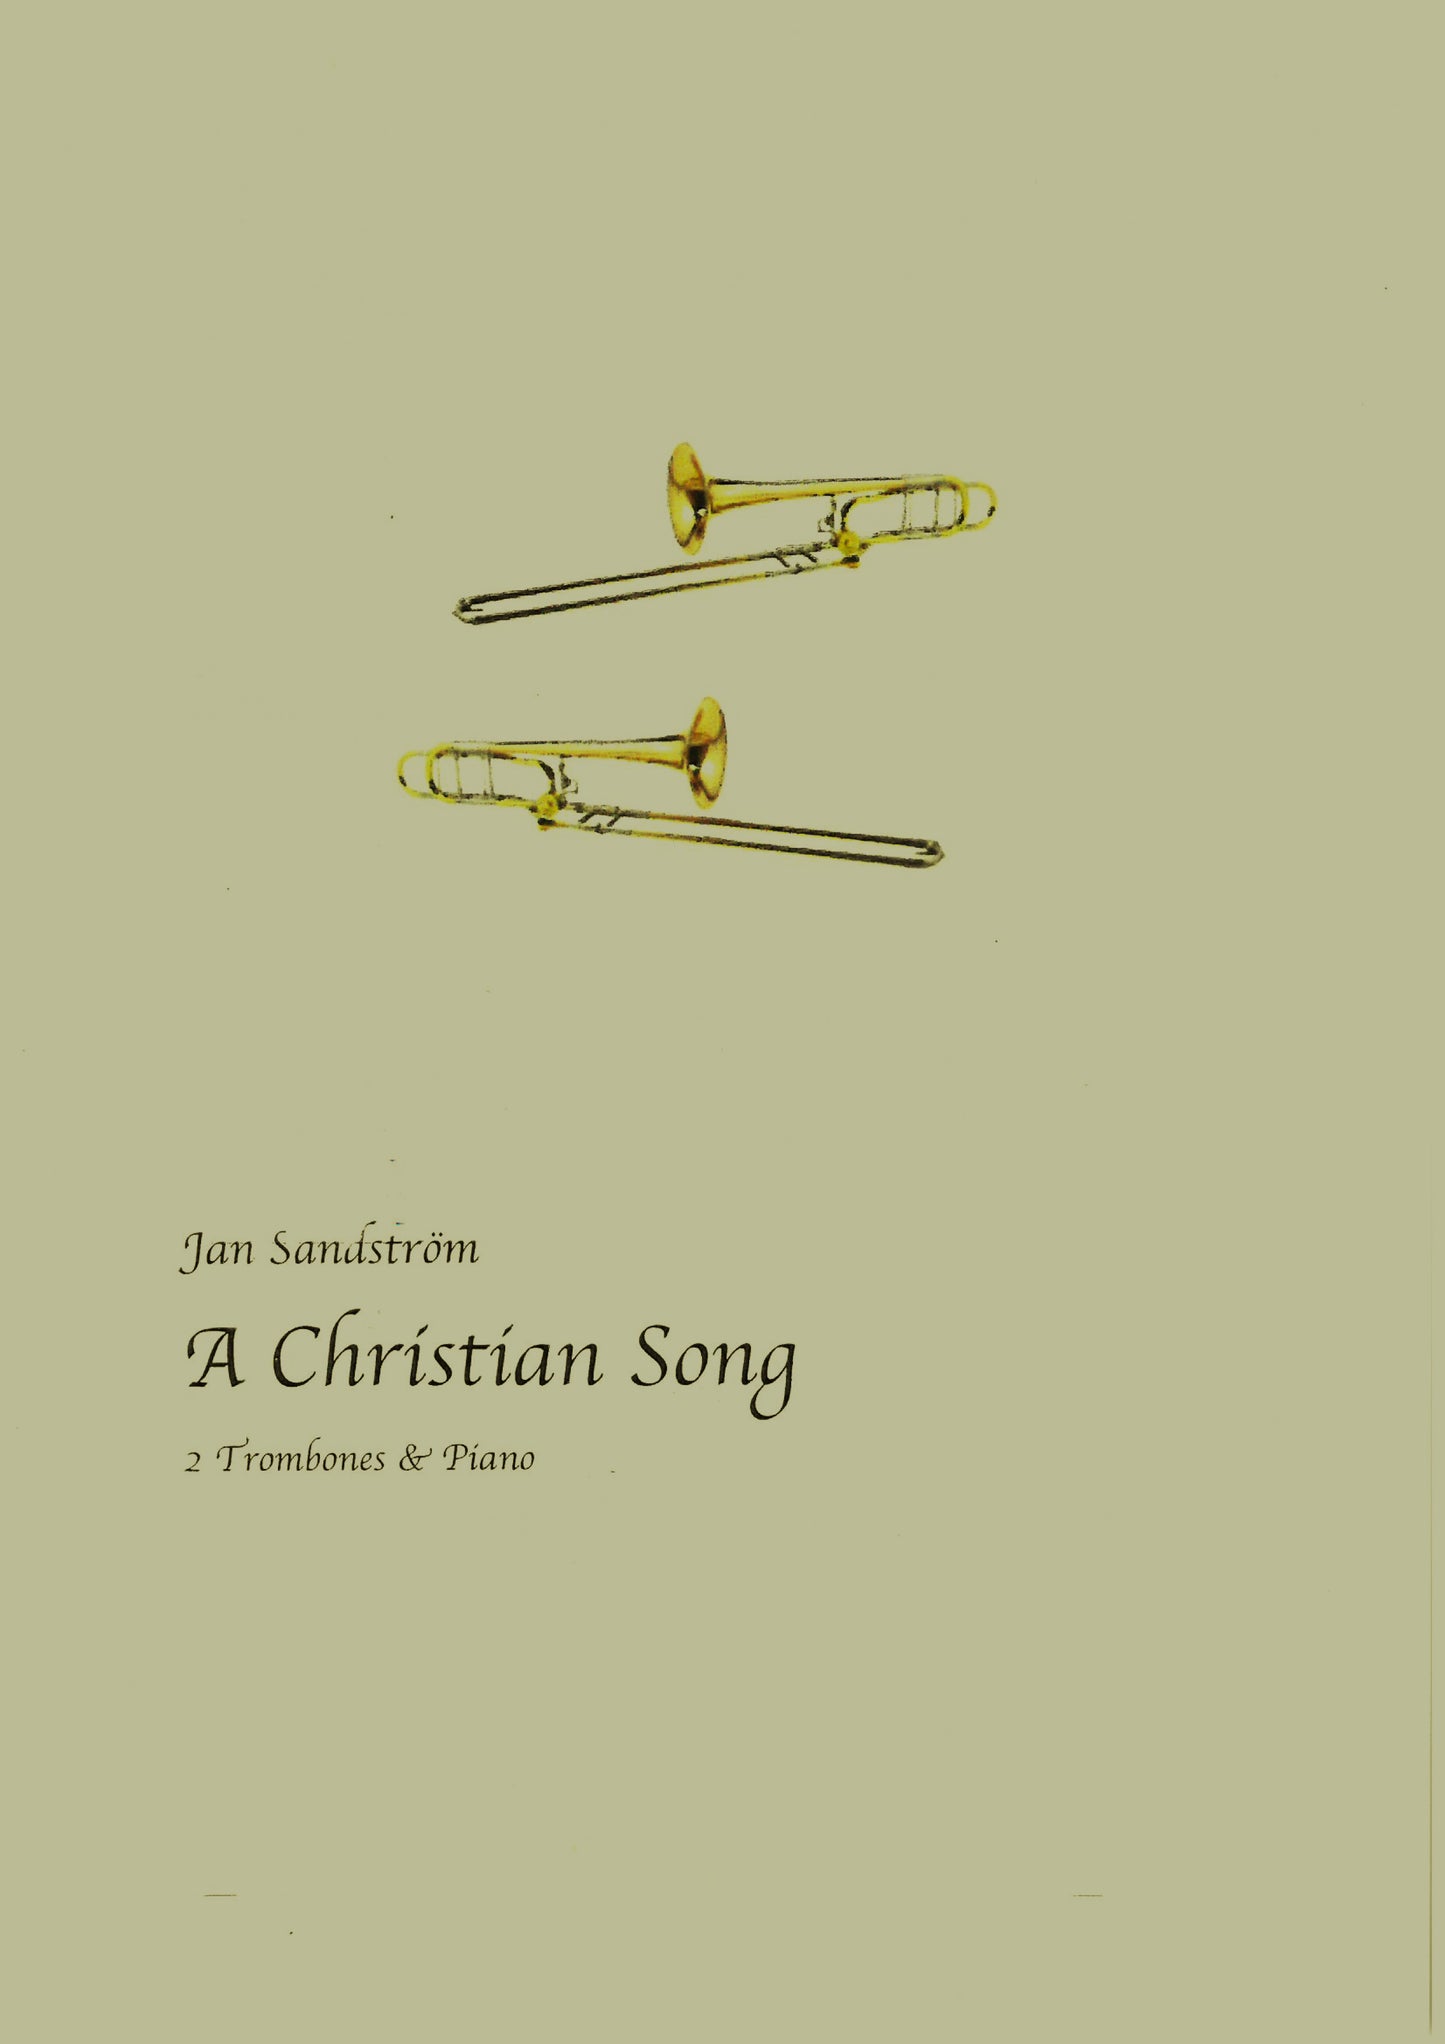 Jan Sandström - A Christian Song, 2 Trombones & Piano